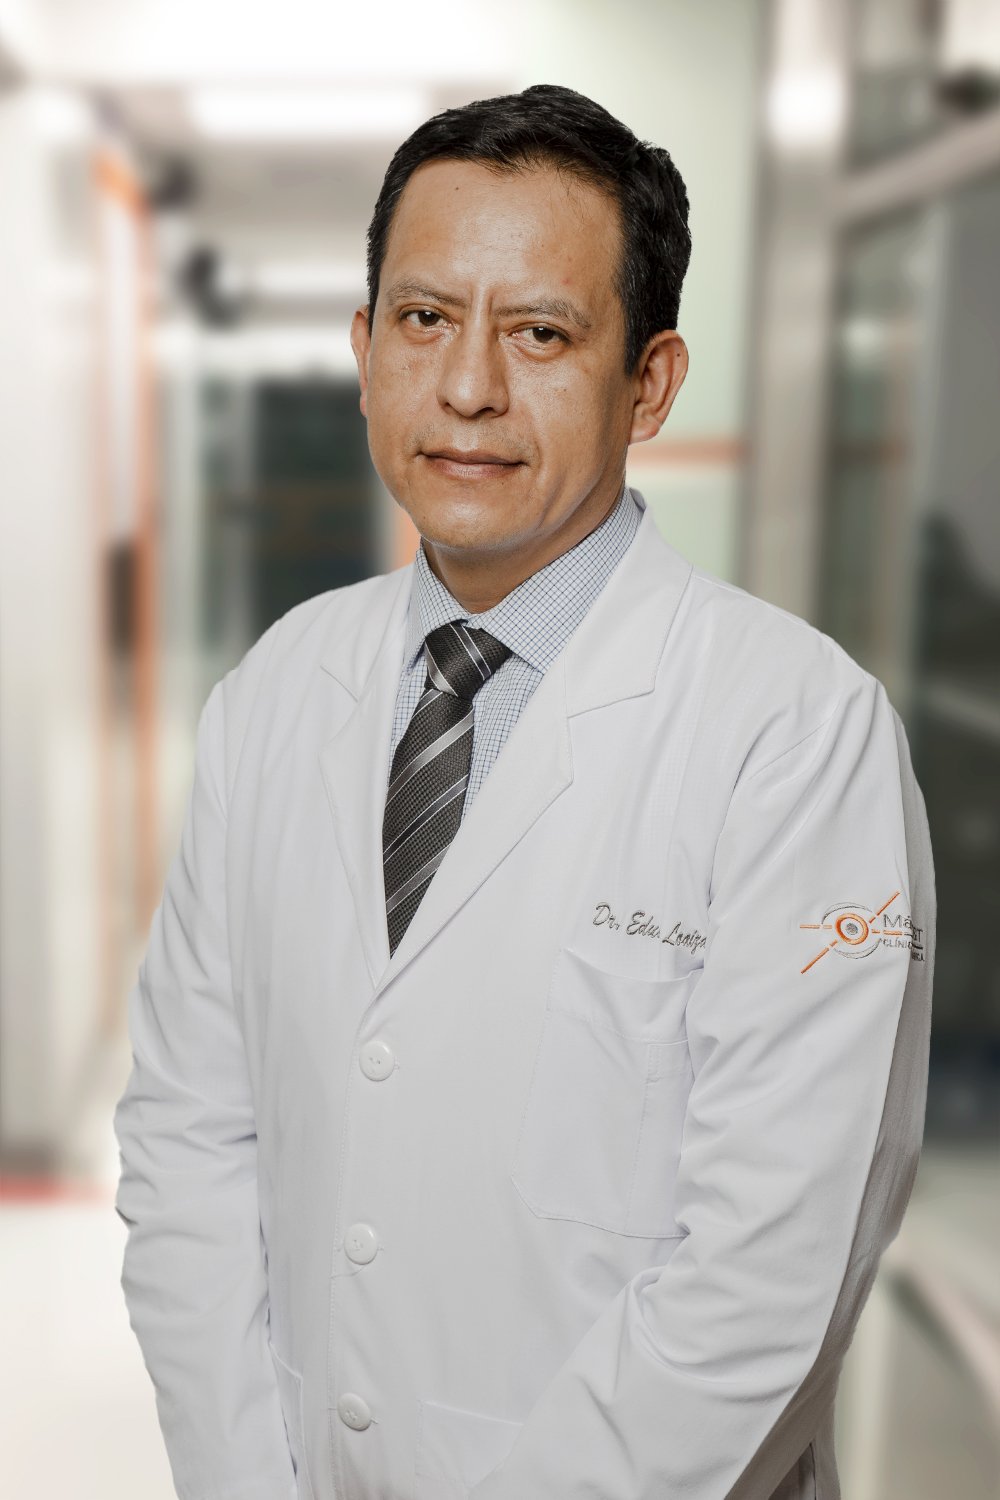 DR. EDUARDO LOAIZA